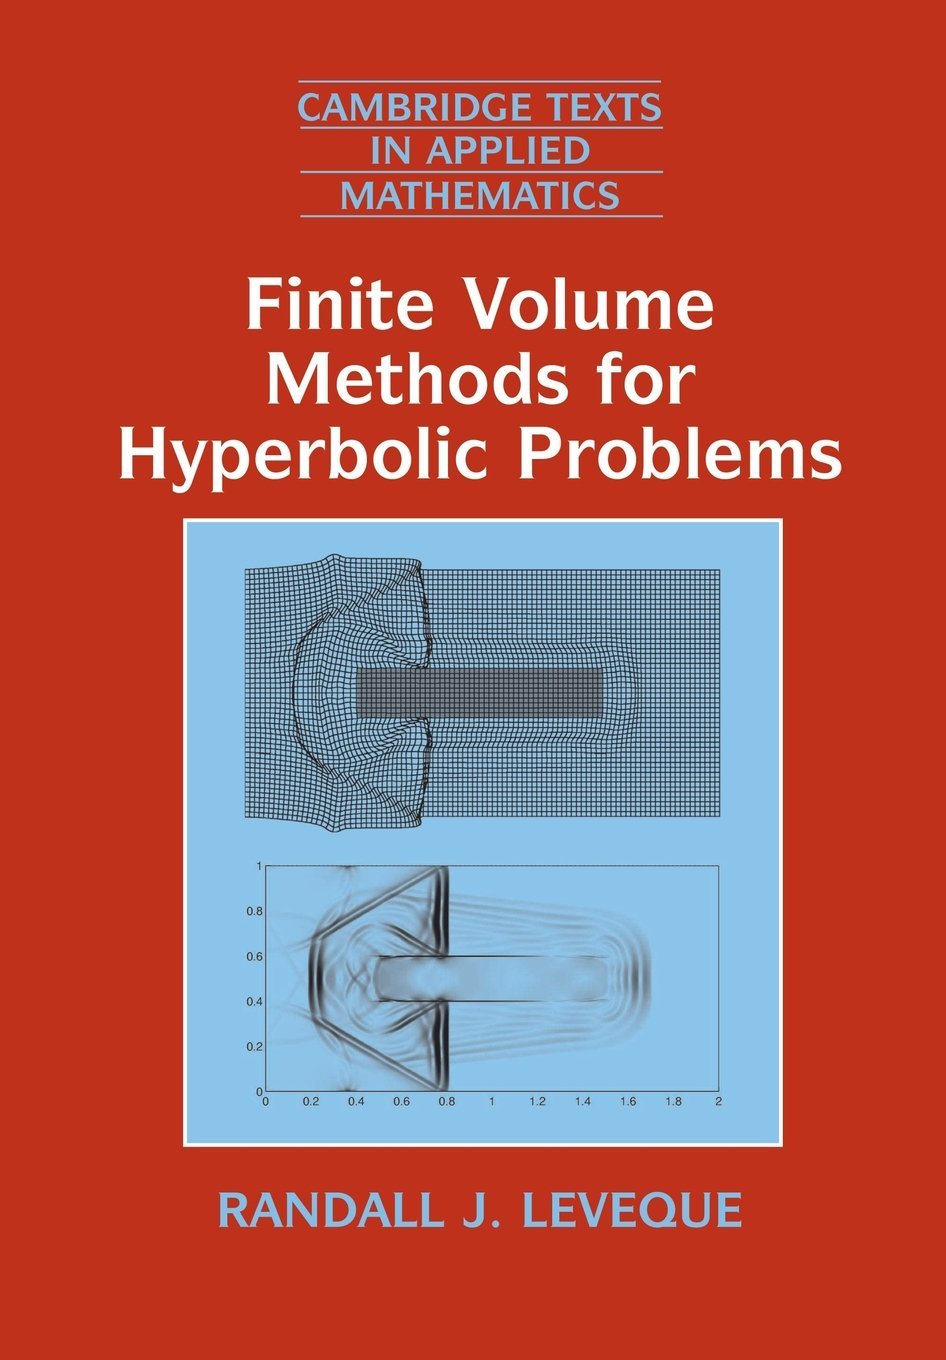 Finite Volume Methods for Hyperbolic Problems.jpg